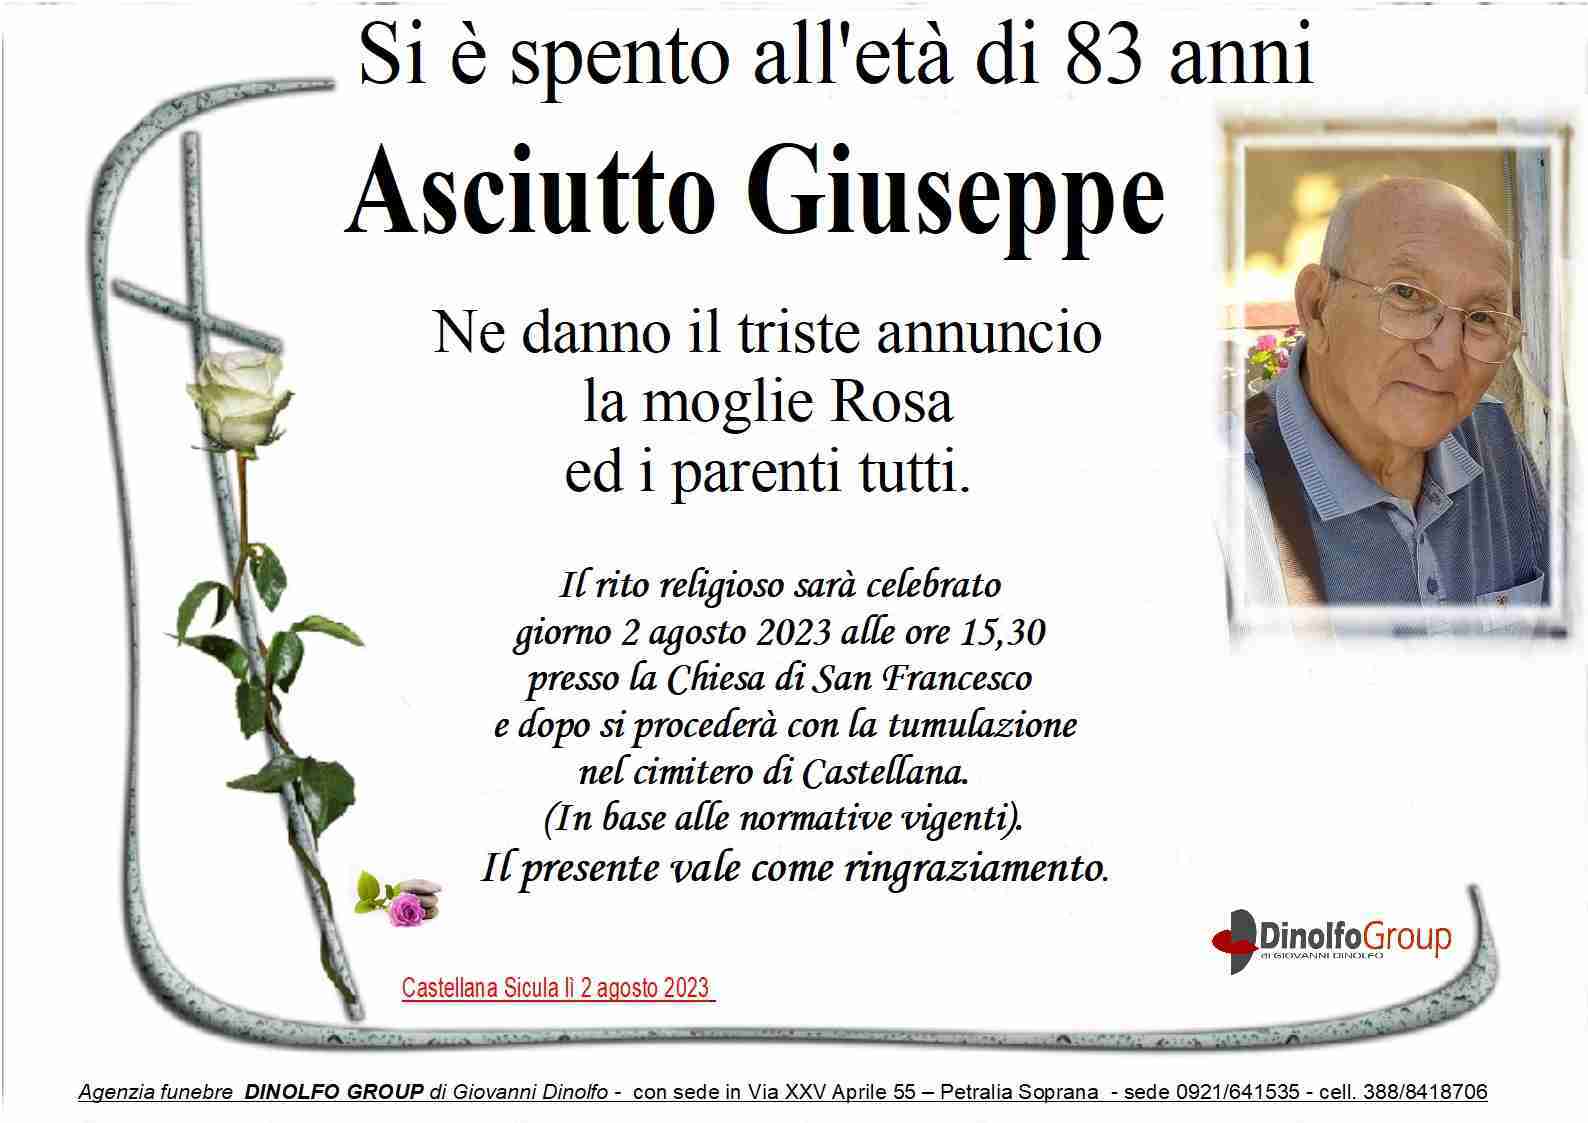 Giuseppe Asciutto